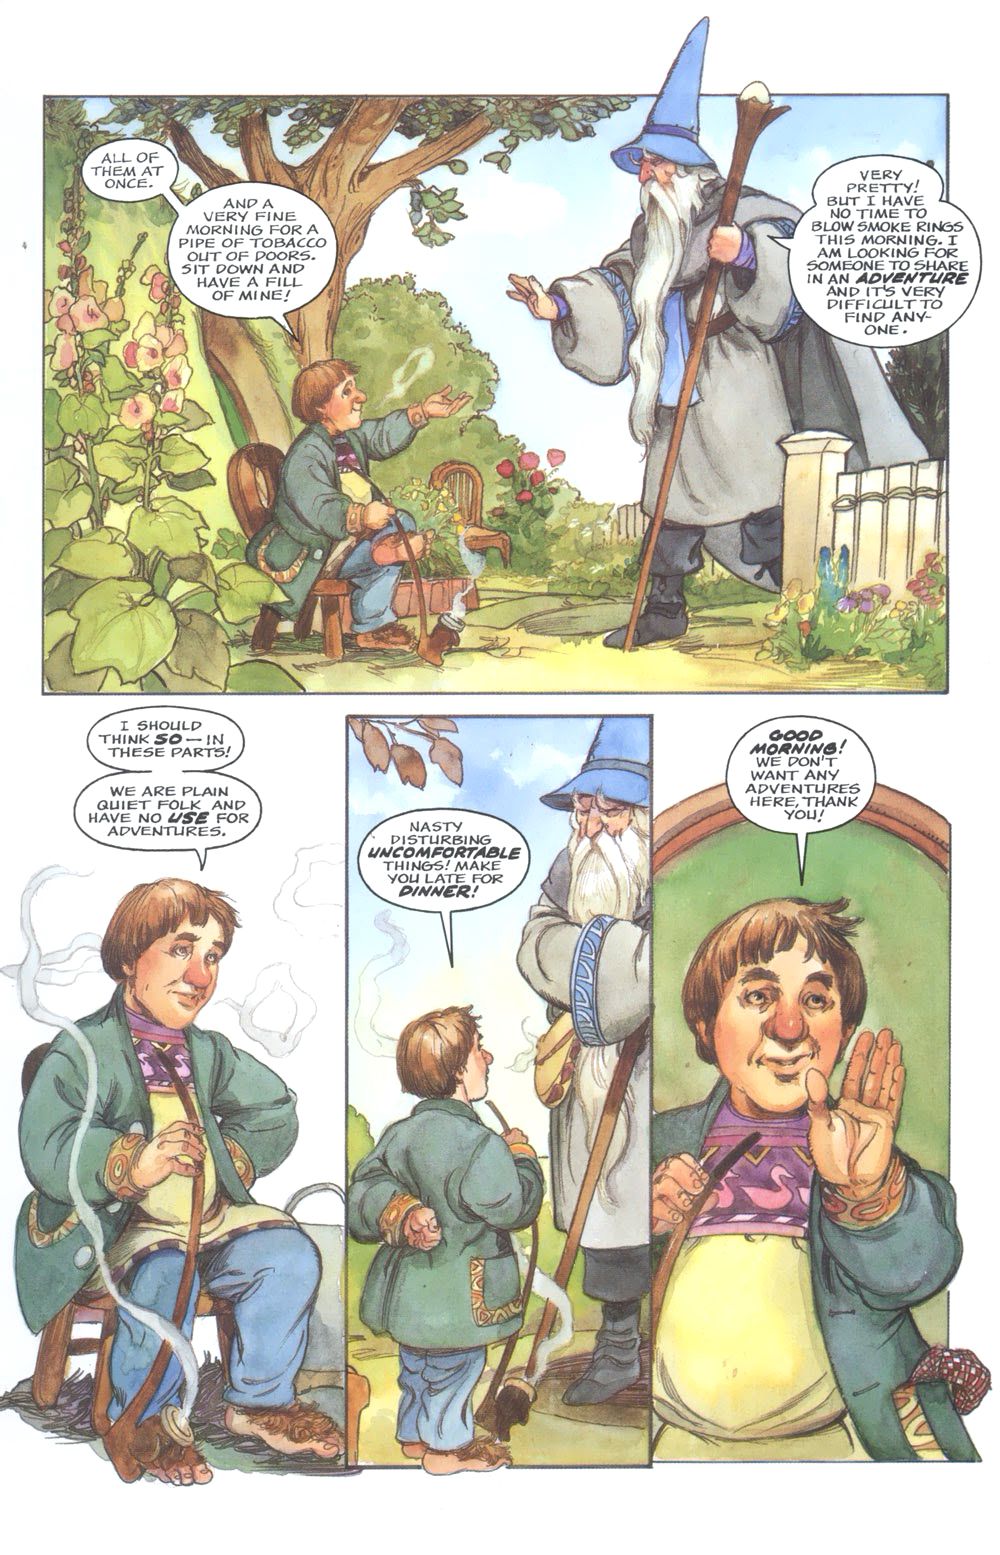 Gandalf dice a Bilbo che sta cercando qualcuno con cui condividere un'avventura, e Bilbo declina bruscamente in The Hobbit: An Illustrated Edition of the Fantasy Classic, Eclipse Comics (1989).